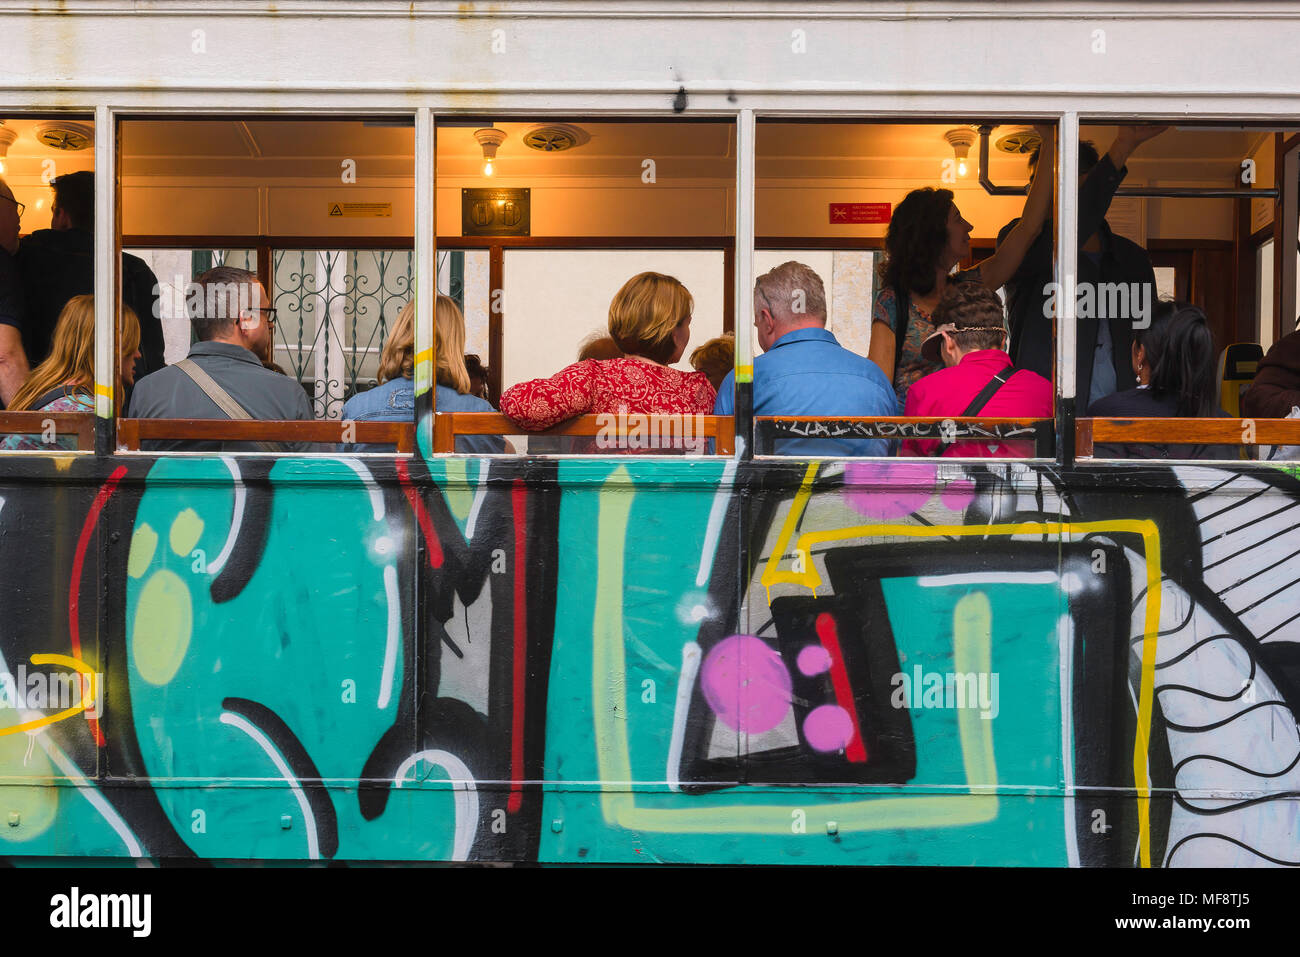 Tram Lisbonne touristes, vue arrière des touristes à l'intérieur d'un tram coloré sur l'Elevador do Gloria dans le quartier de Baixa centre de Lisbonne, Portugal. Banque D'Images